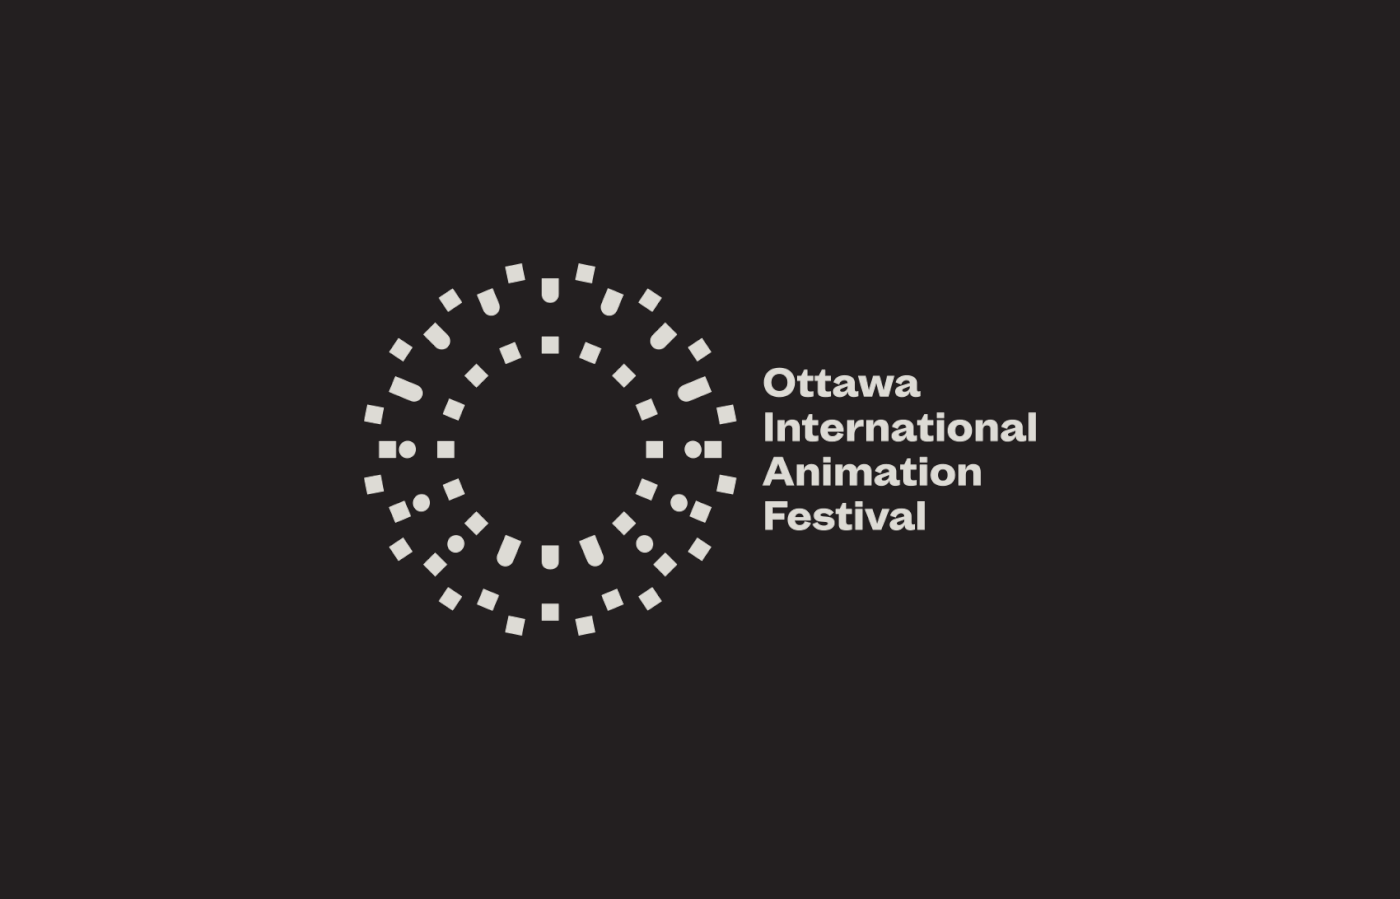 Logo design by Michael George Haddad for the Ottawa International Animation Festival.